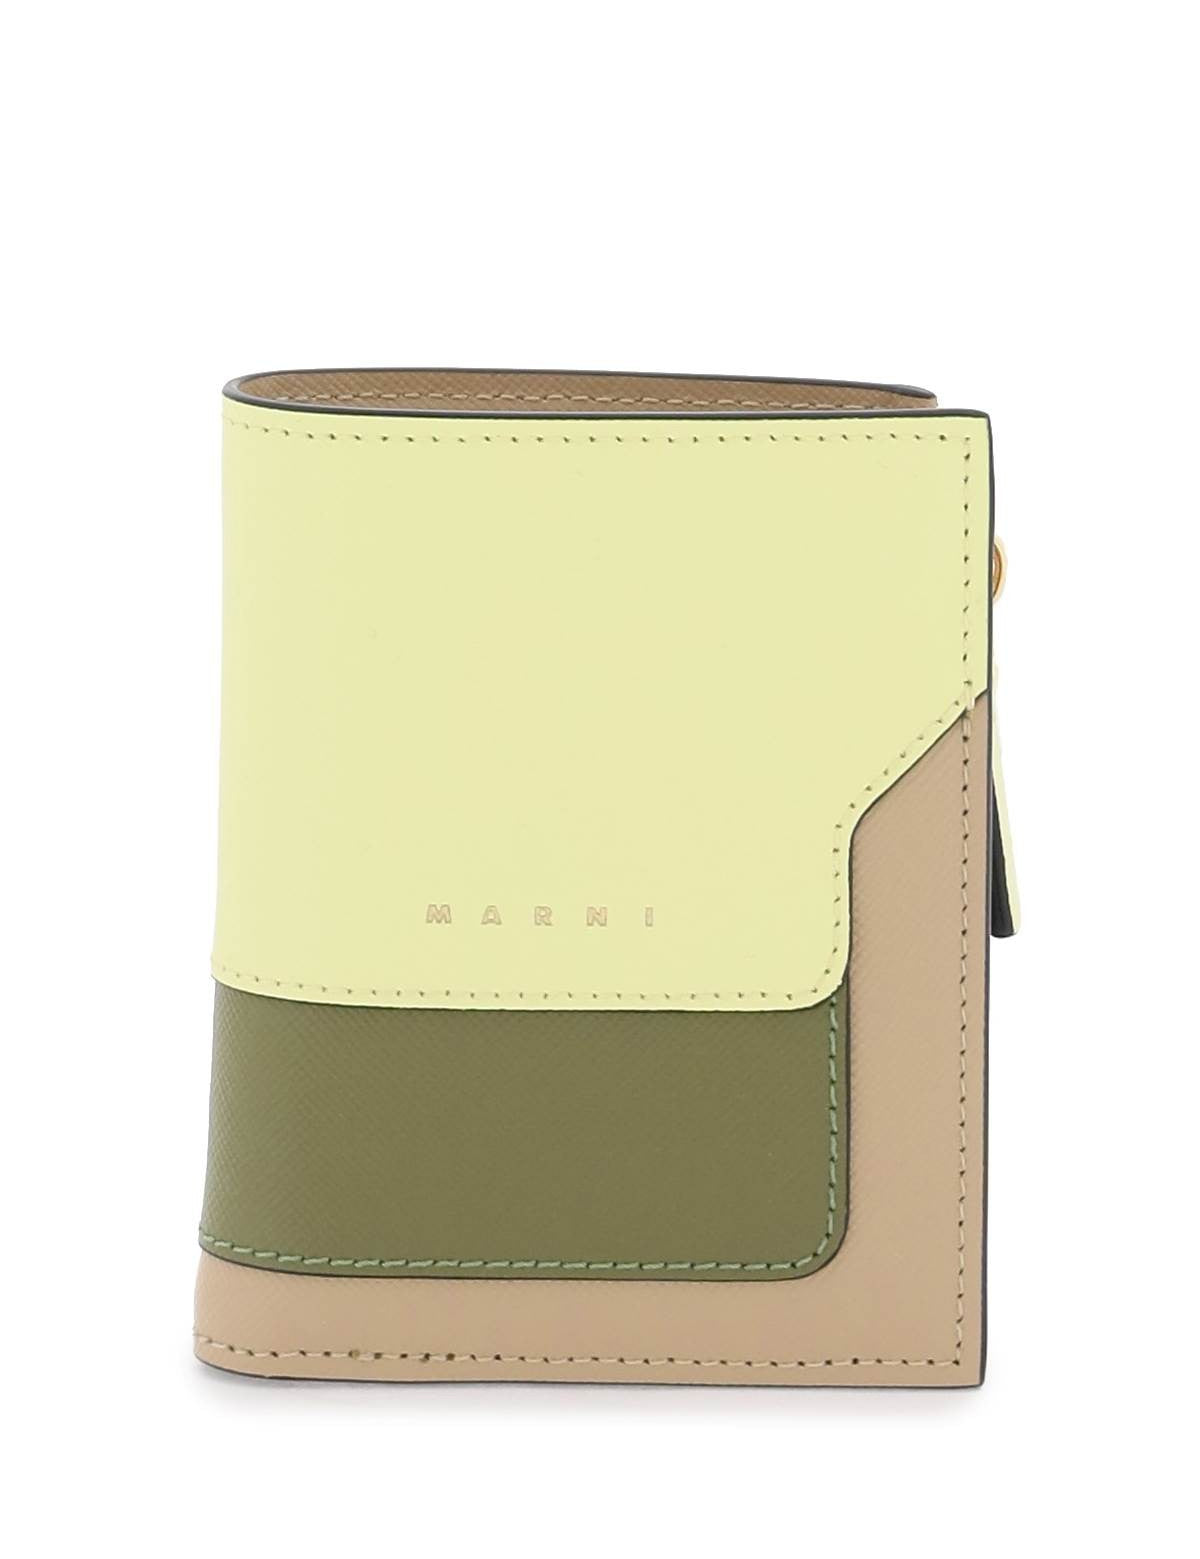 marni-multicolored-saffiano-leather-bi-fold-wallet.jpg